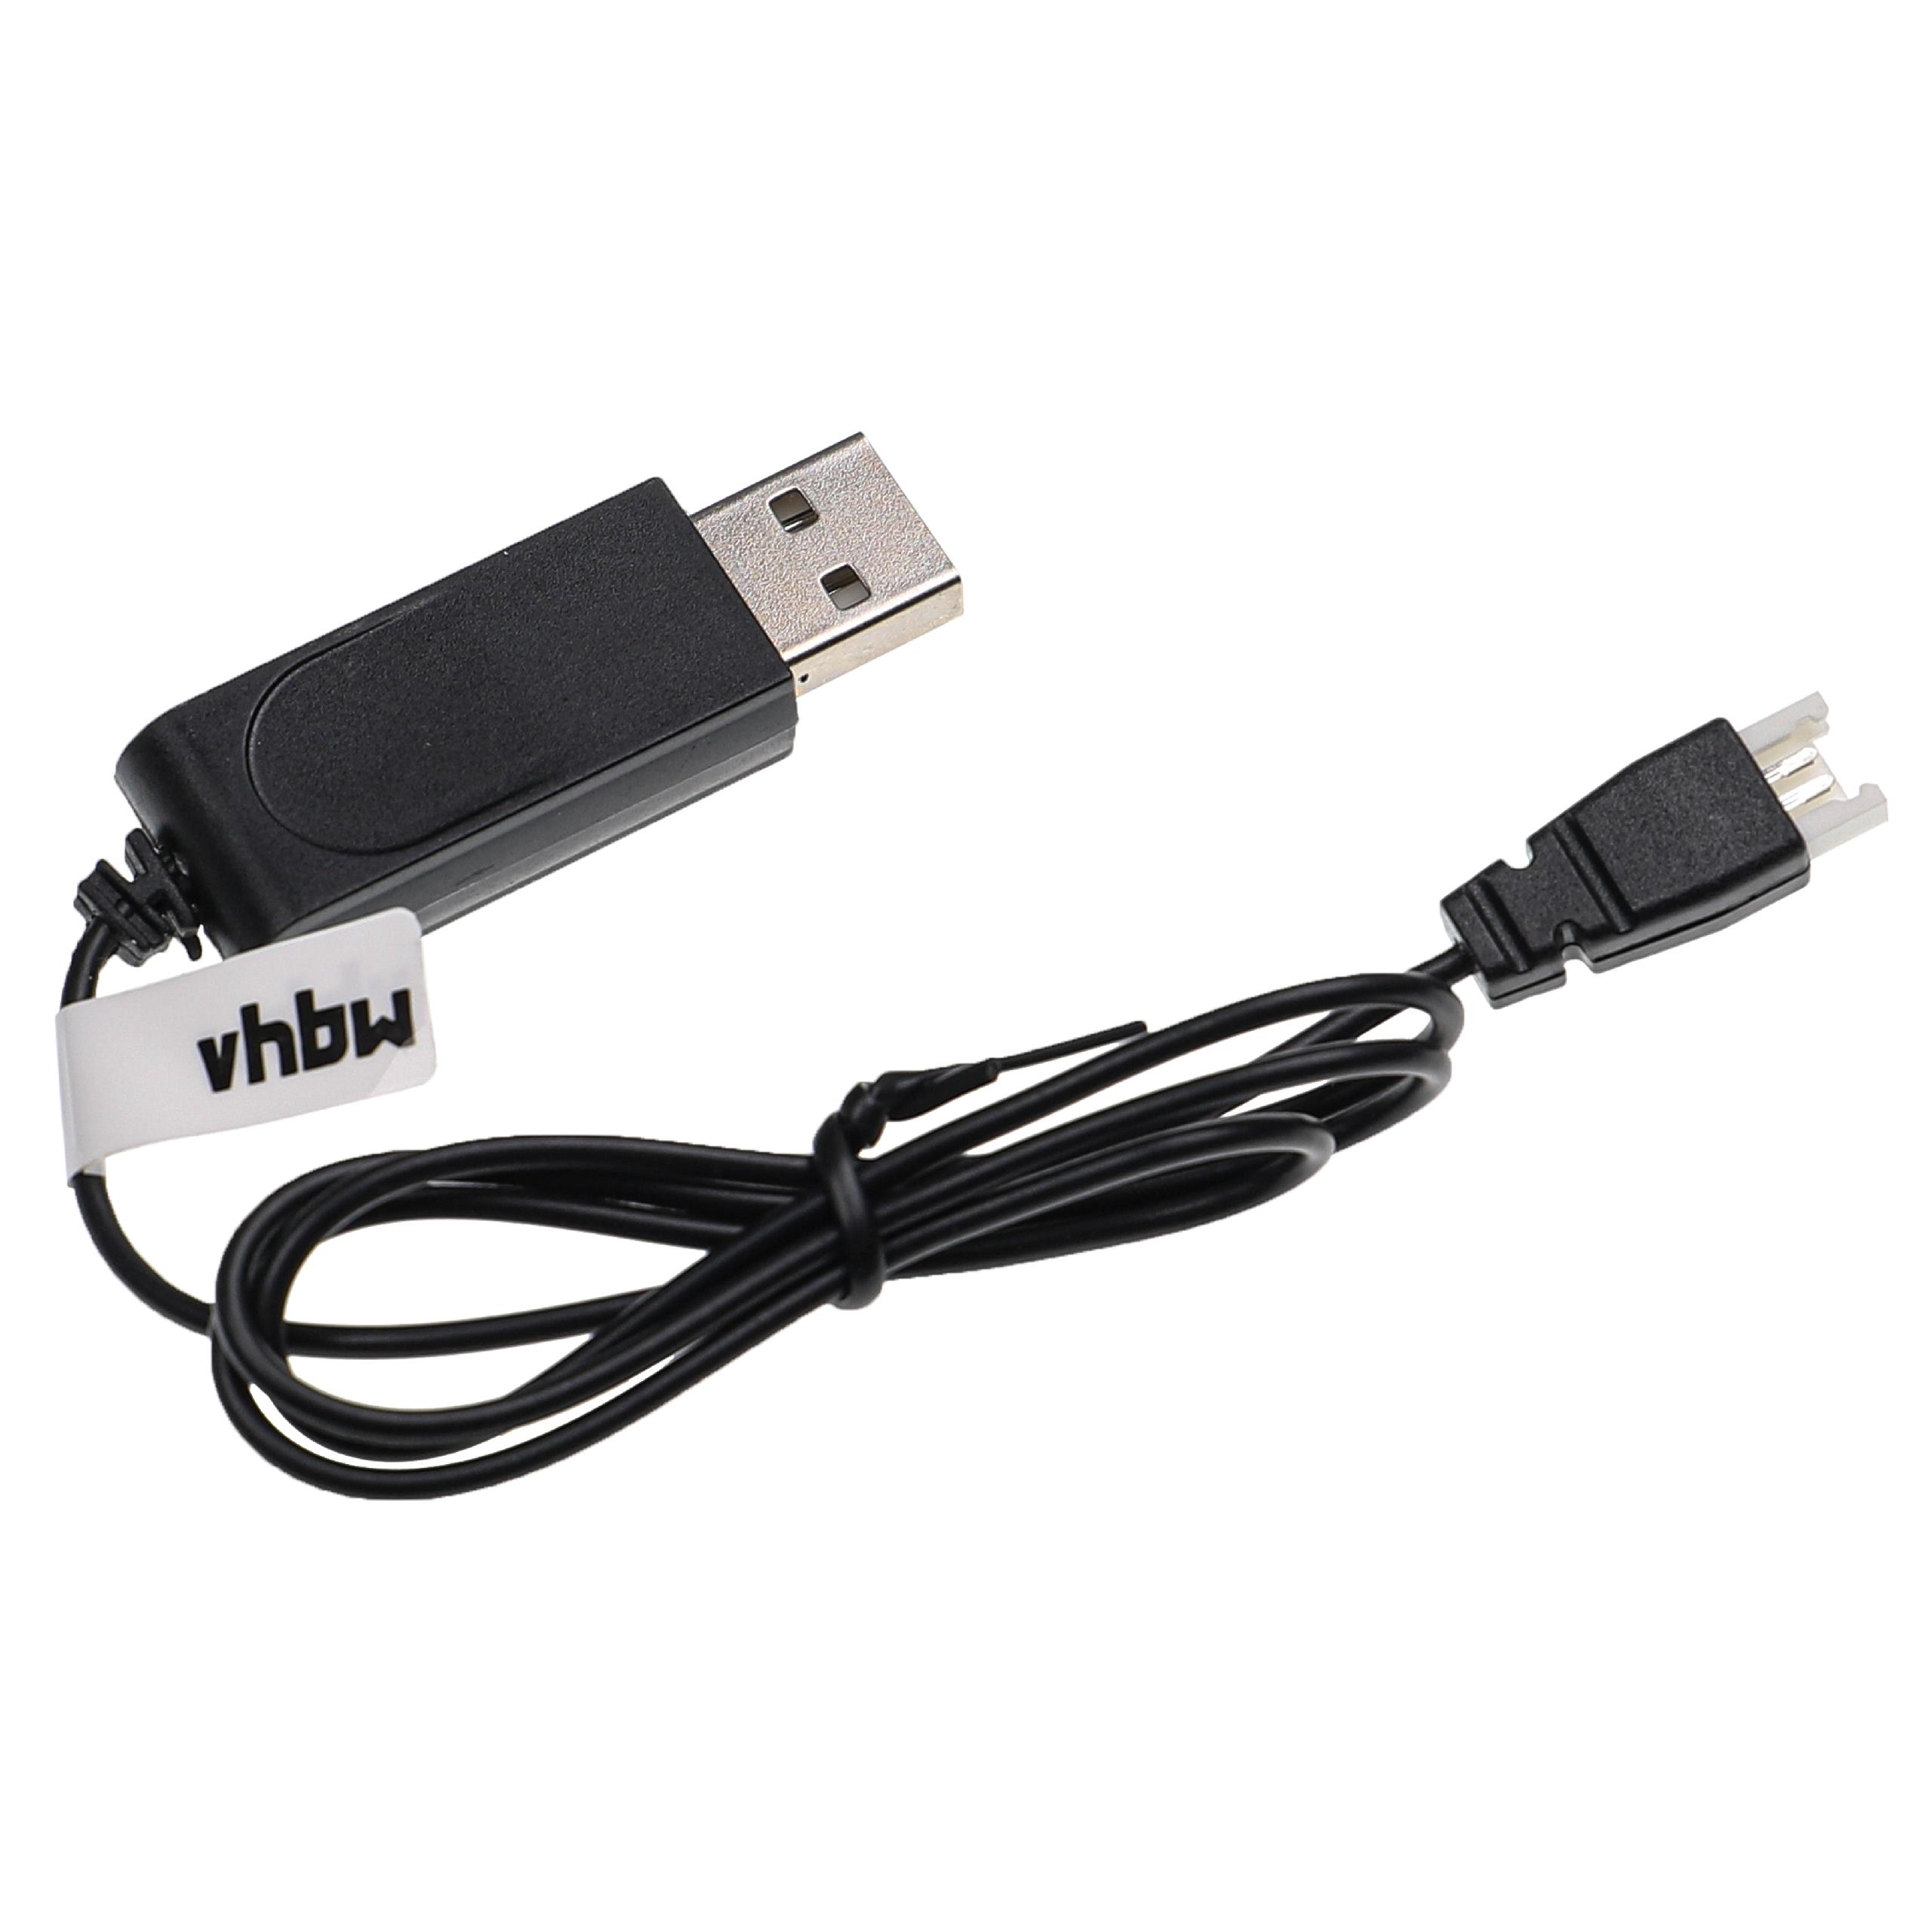 Kabel USB do ładowania drona Carrera zamiennik Carrera 503001/3, 370410145 - 60 cm